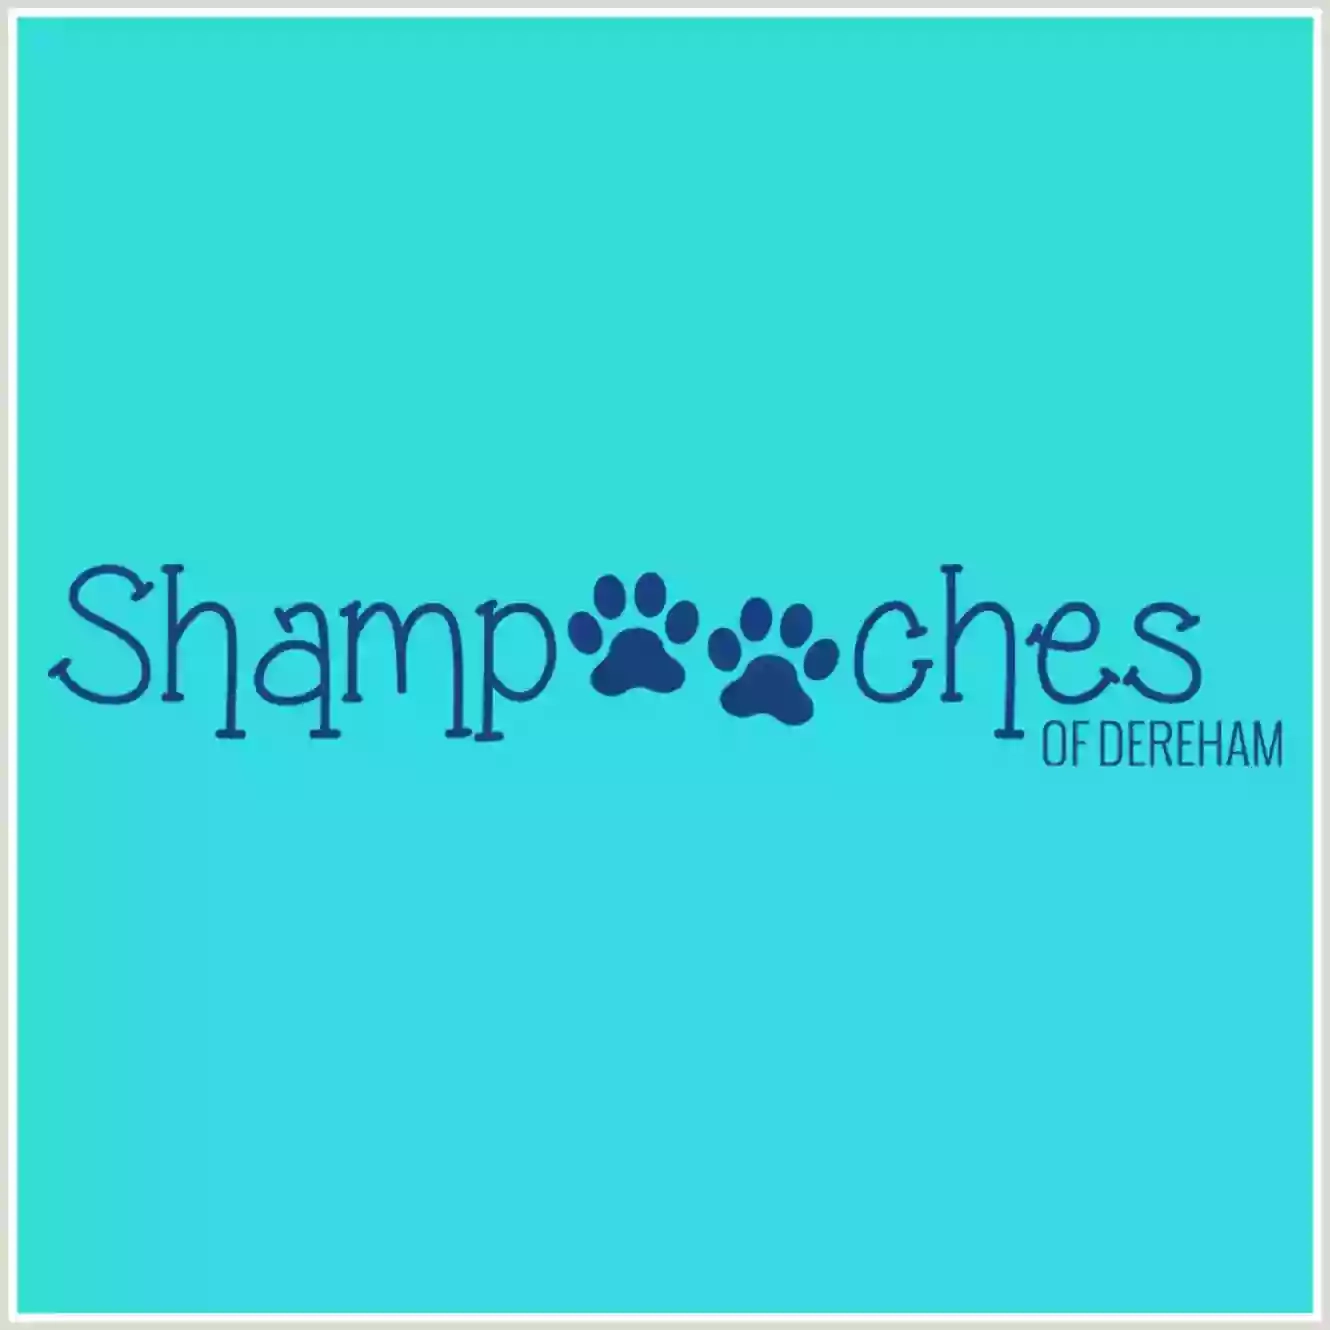 Shampooches of Dereham